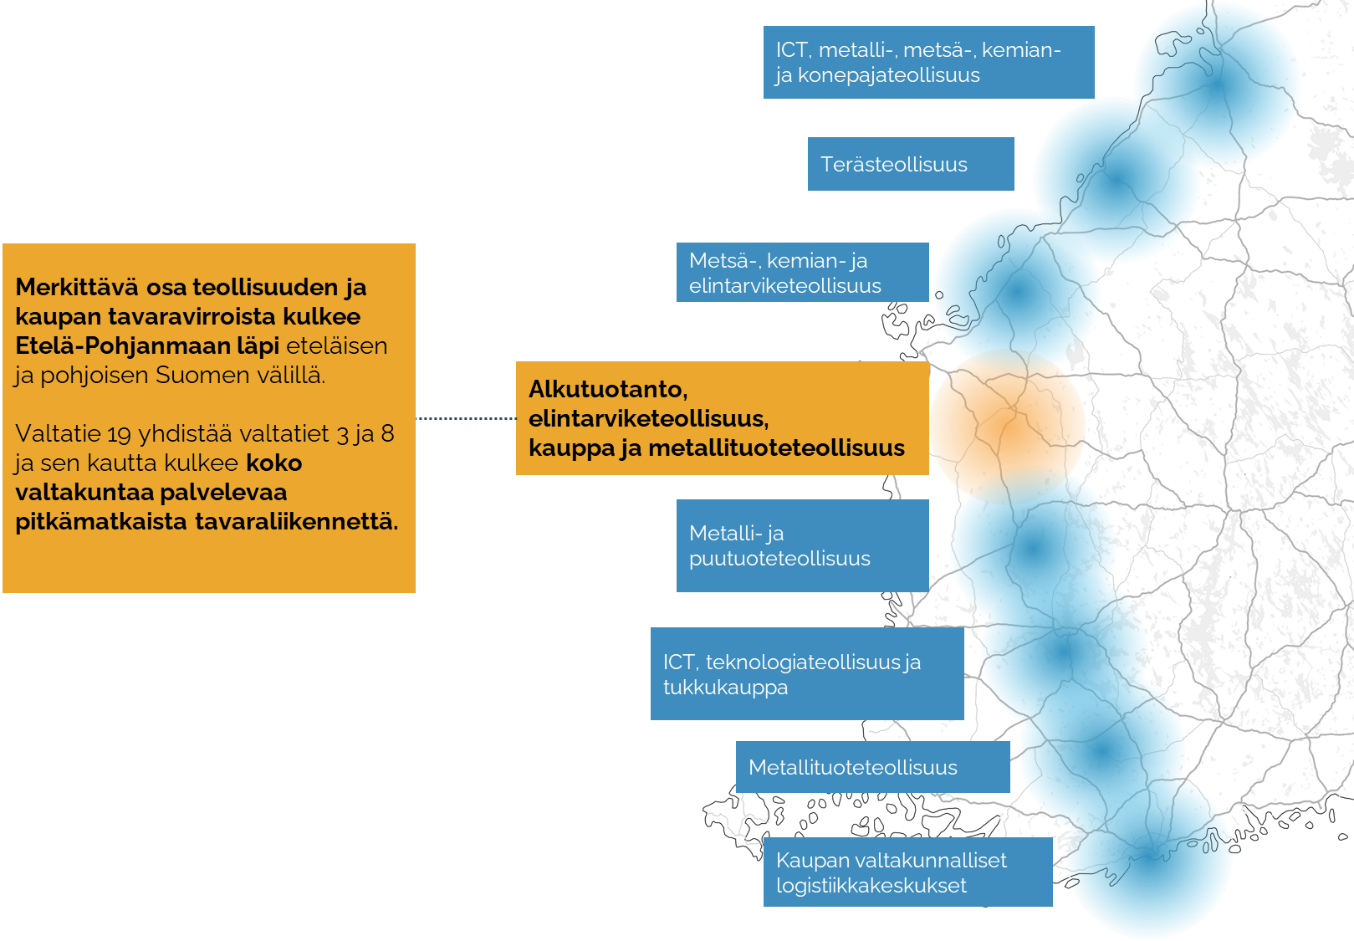 Merkittävä osa teollisuuden ja kaupan tavaravirroista kulkee Etelä-Pohjanmaan läpi eteläisen ja pohjoisen Suomen välillä. Valtatie 19 yhdistää valtatiet 3 ja 8 ja sen kautta kulkee koko valtakuntaa palvelevaa pitkämatkaista tavaraliikennettä.